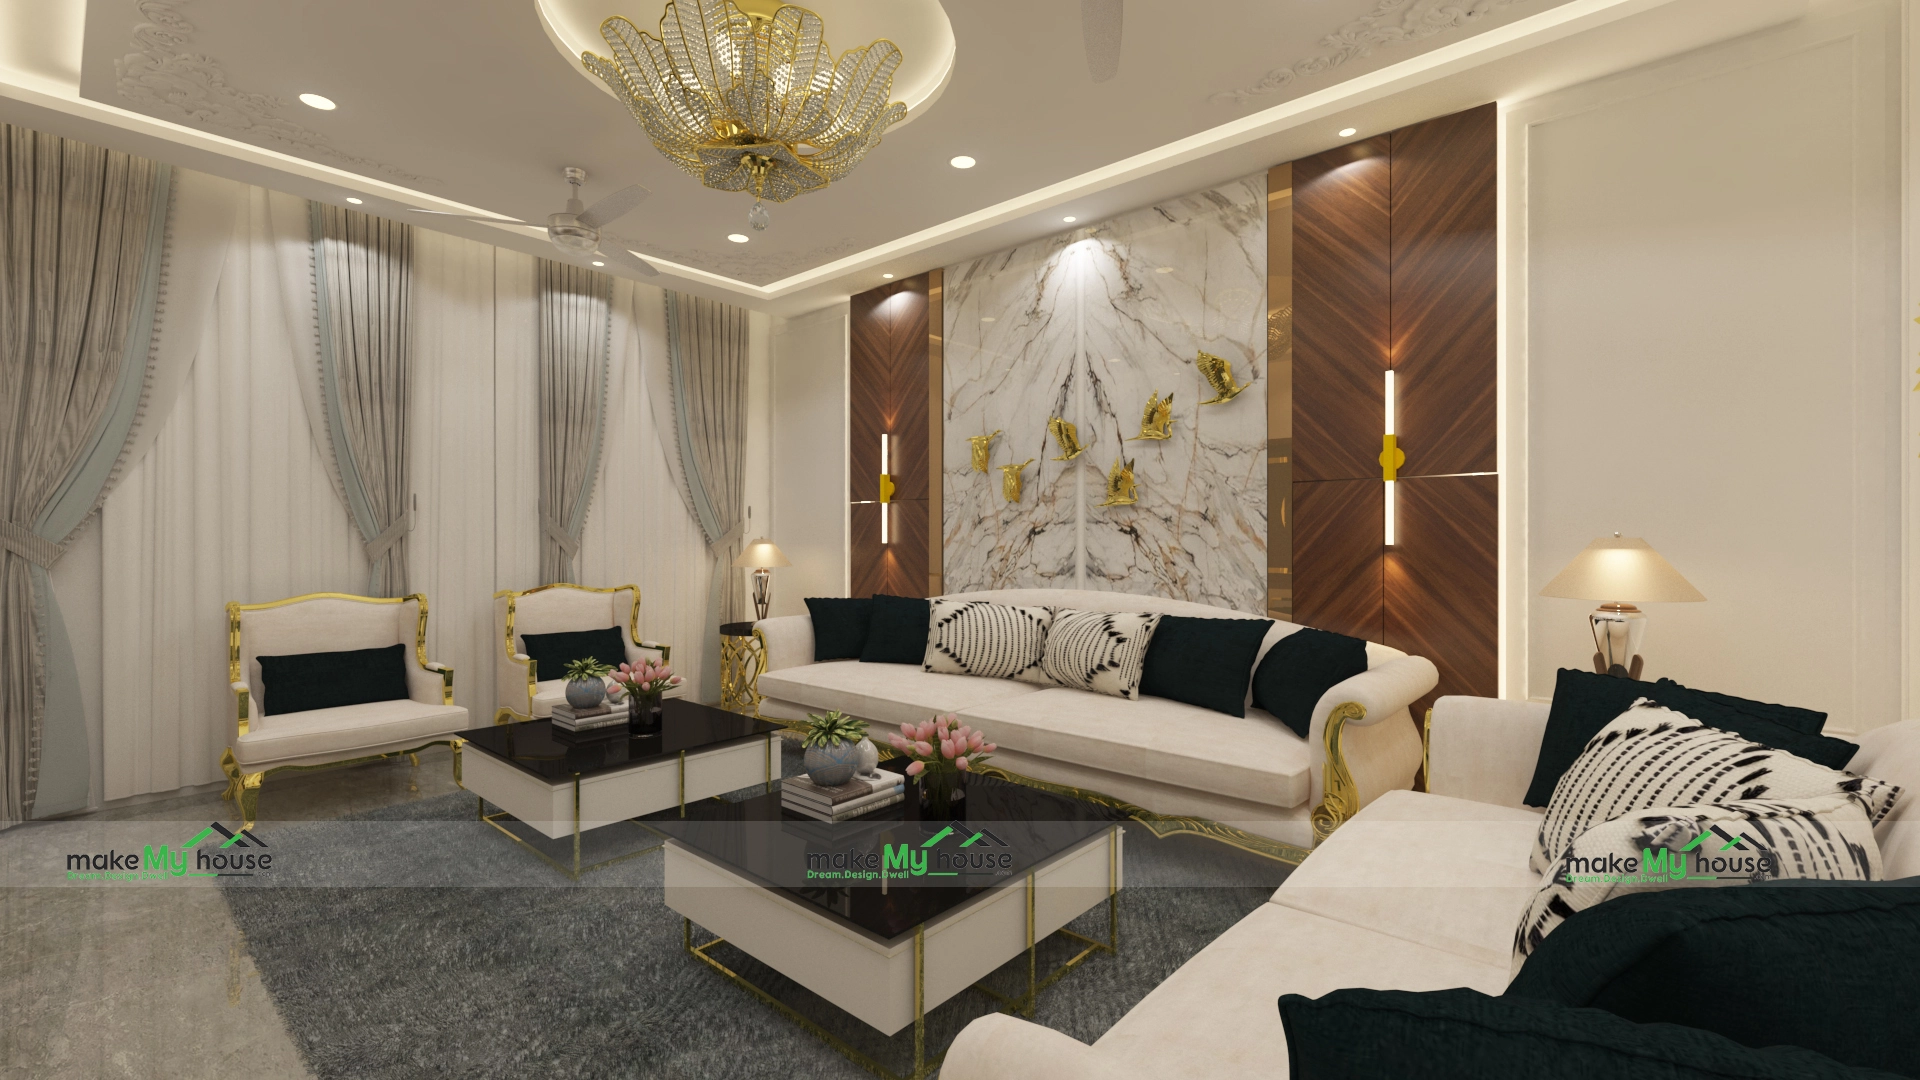 Luxury house interior